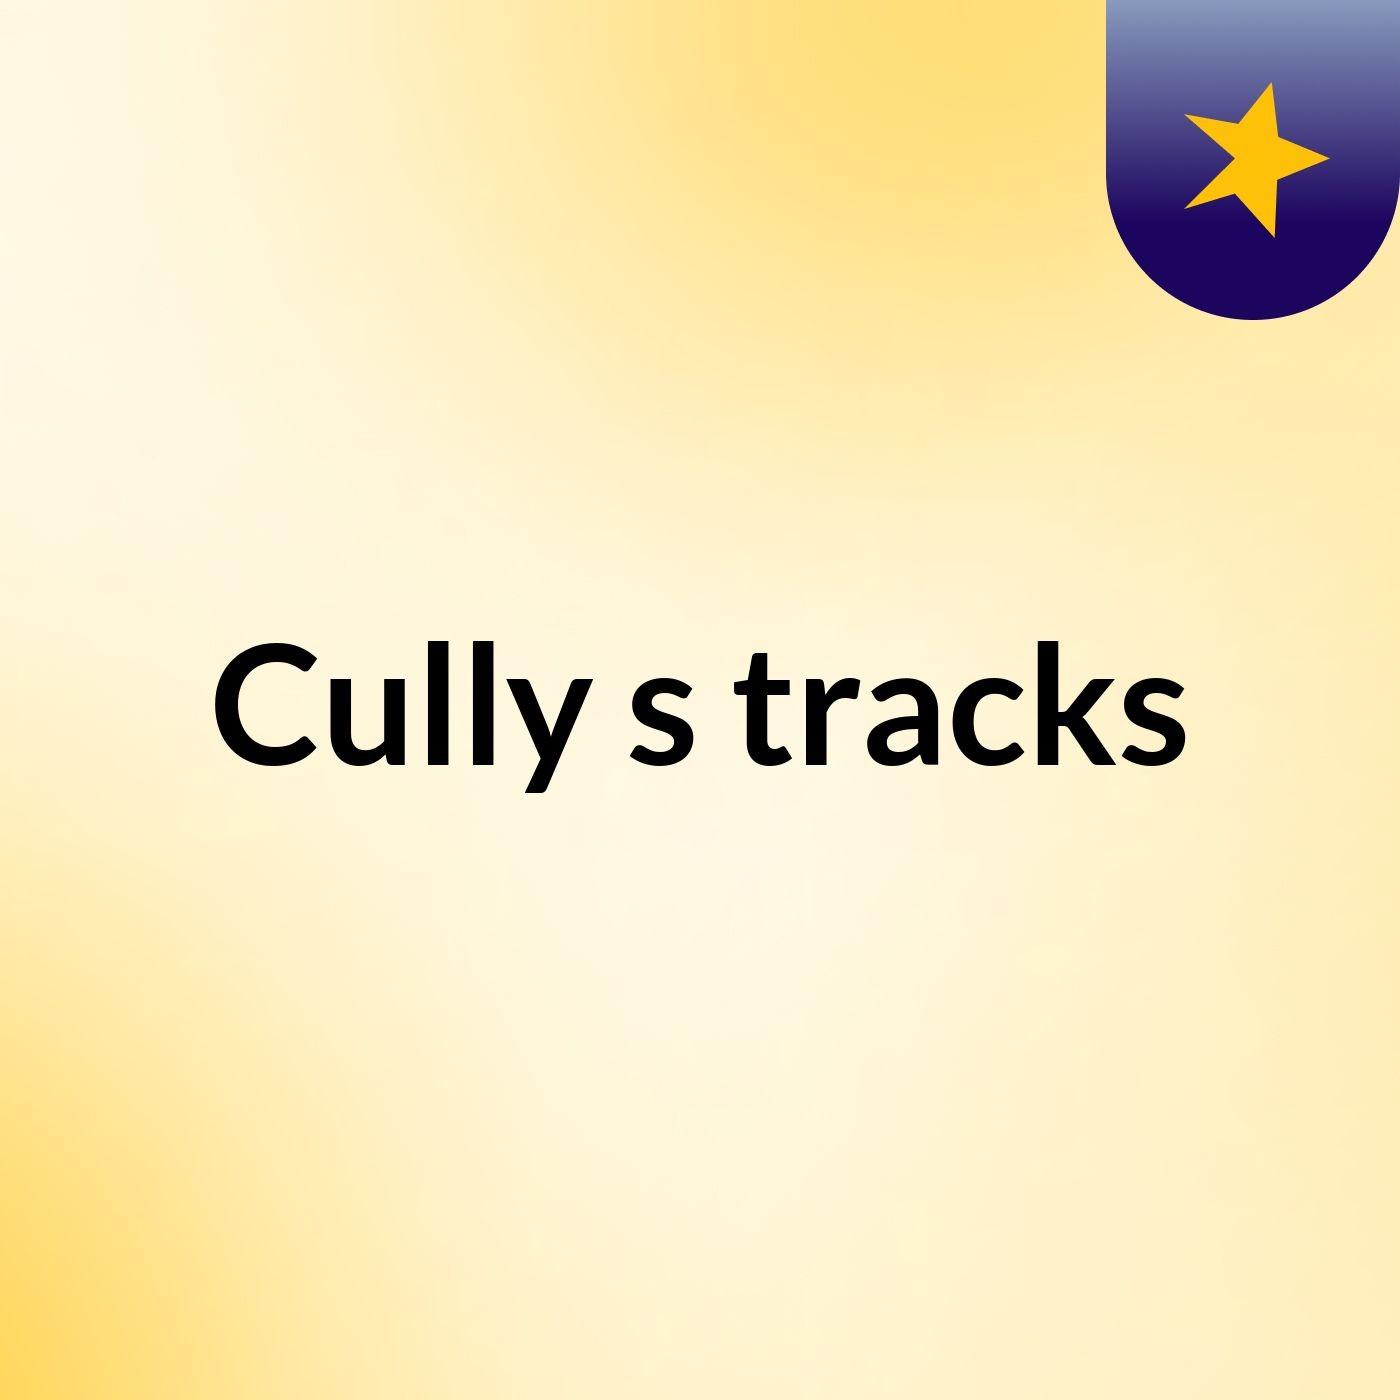 Cully's tracks